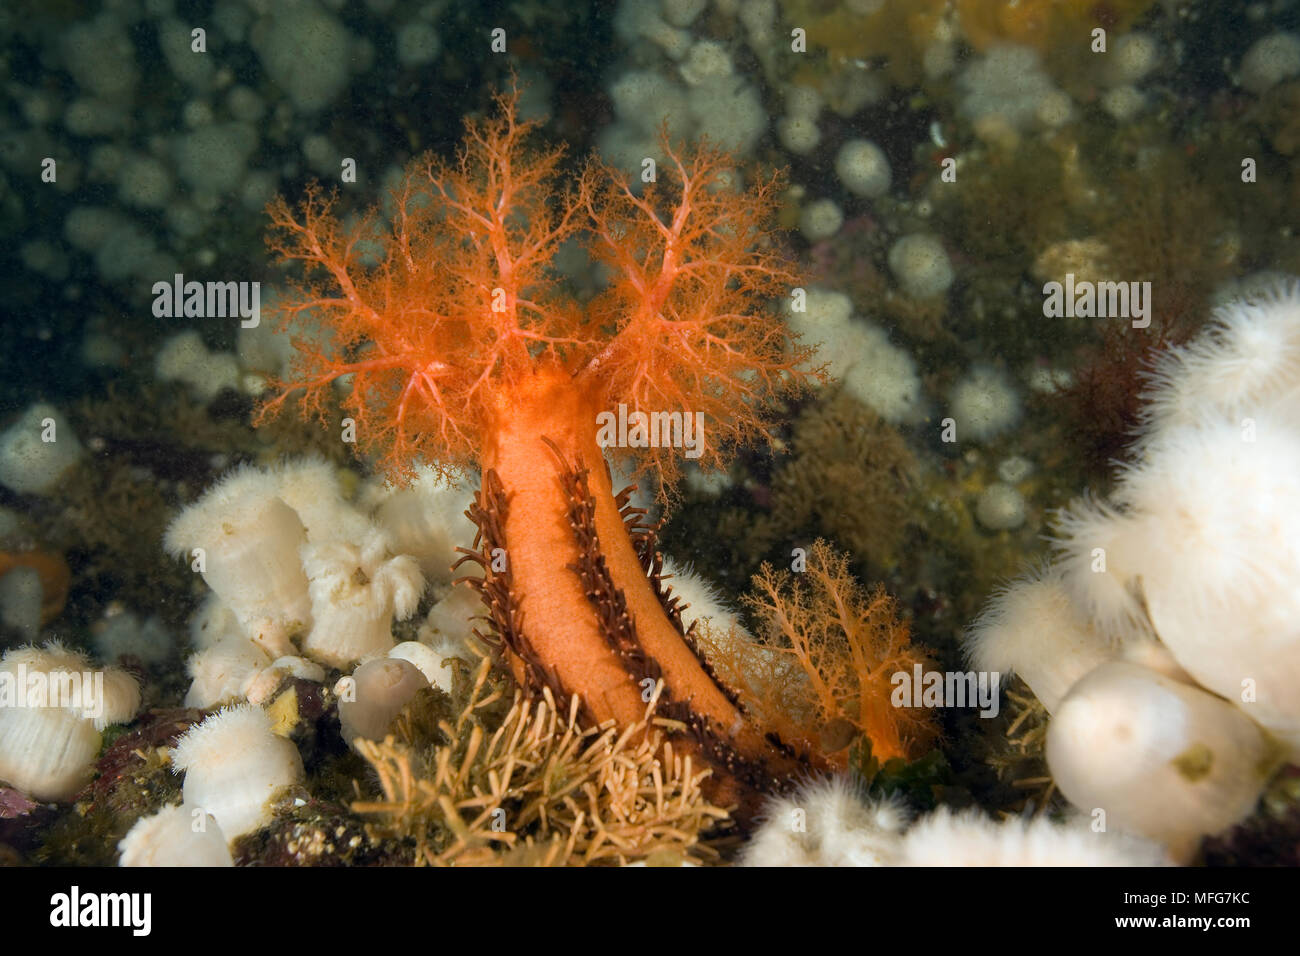 Orange sea cucumber, Cucumaria miniata and anemone, Metridium senile, Vancouver Island, British Columbia, Canada, Pacific Ocean  Date: 22.07.08  Ref: Stock Photo